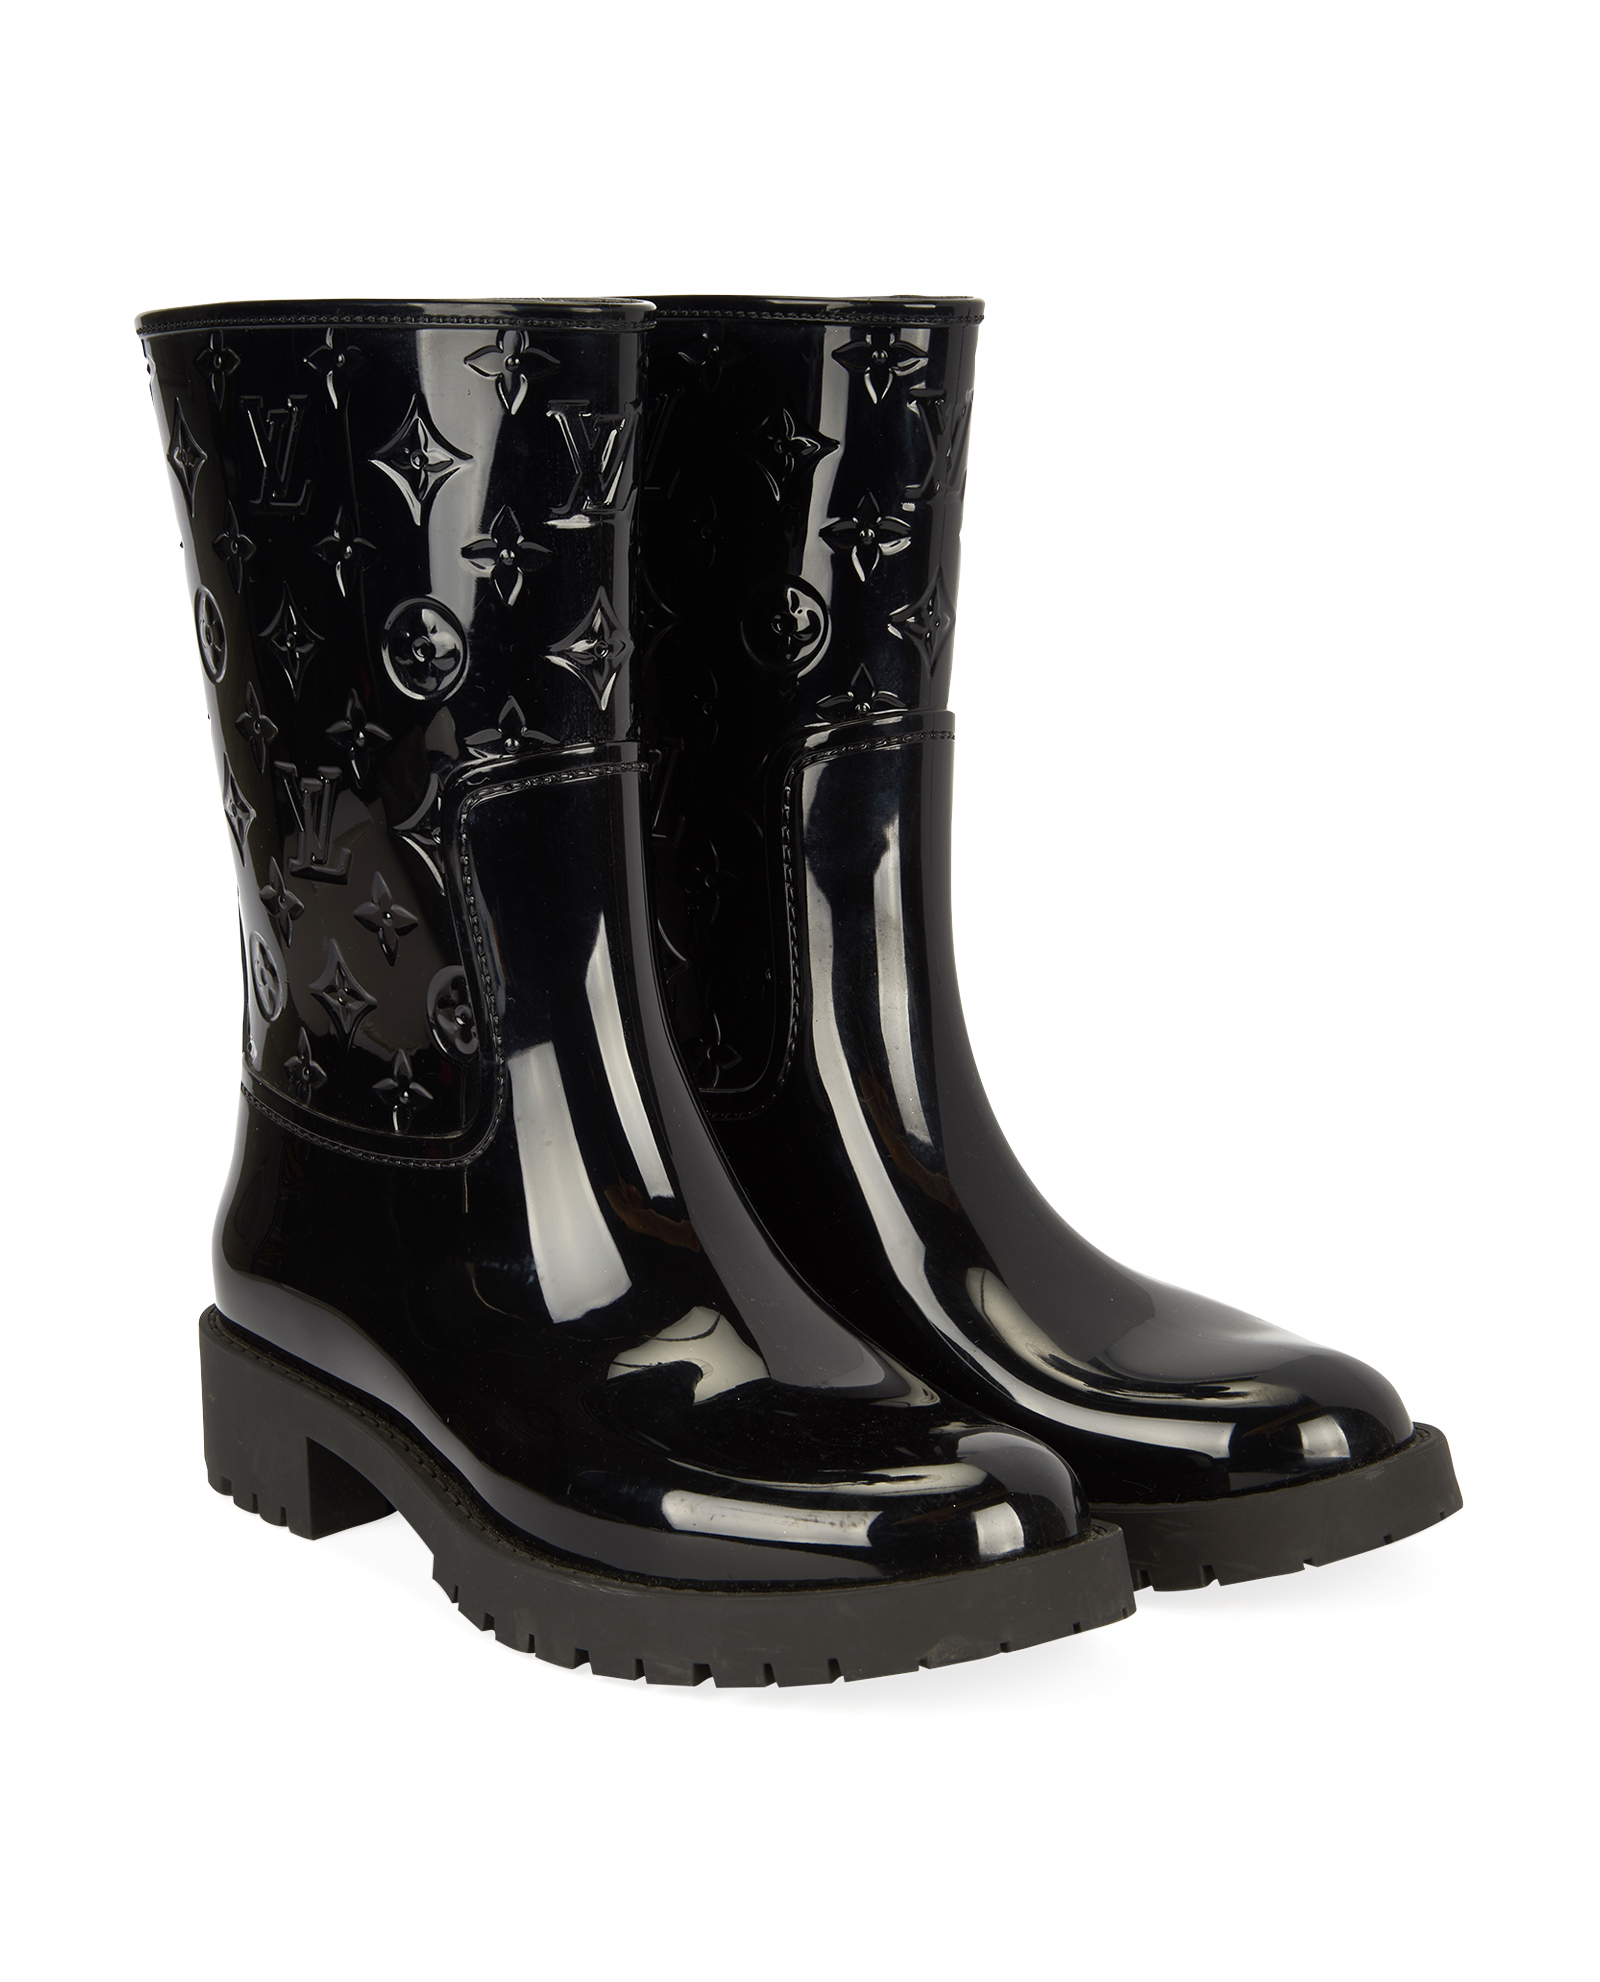 Wellington boots Louis Vuitton Black size 38 EU in Rubber - 30444509